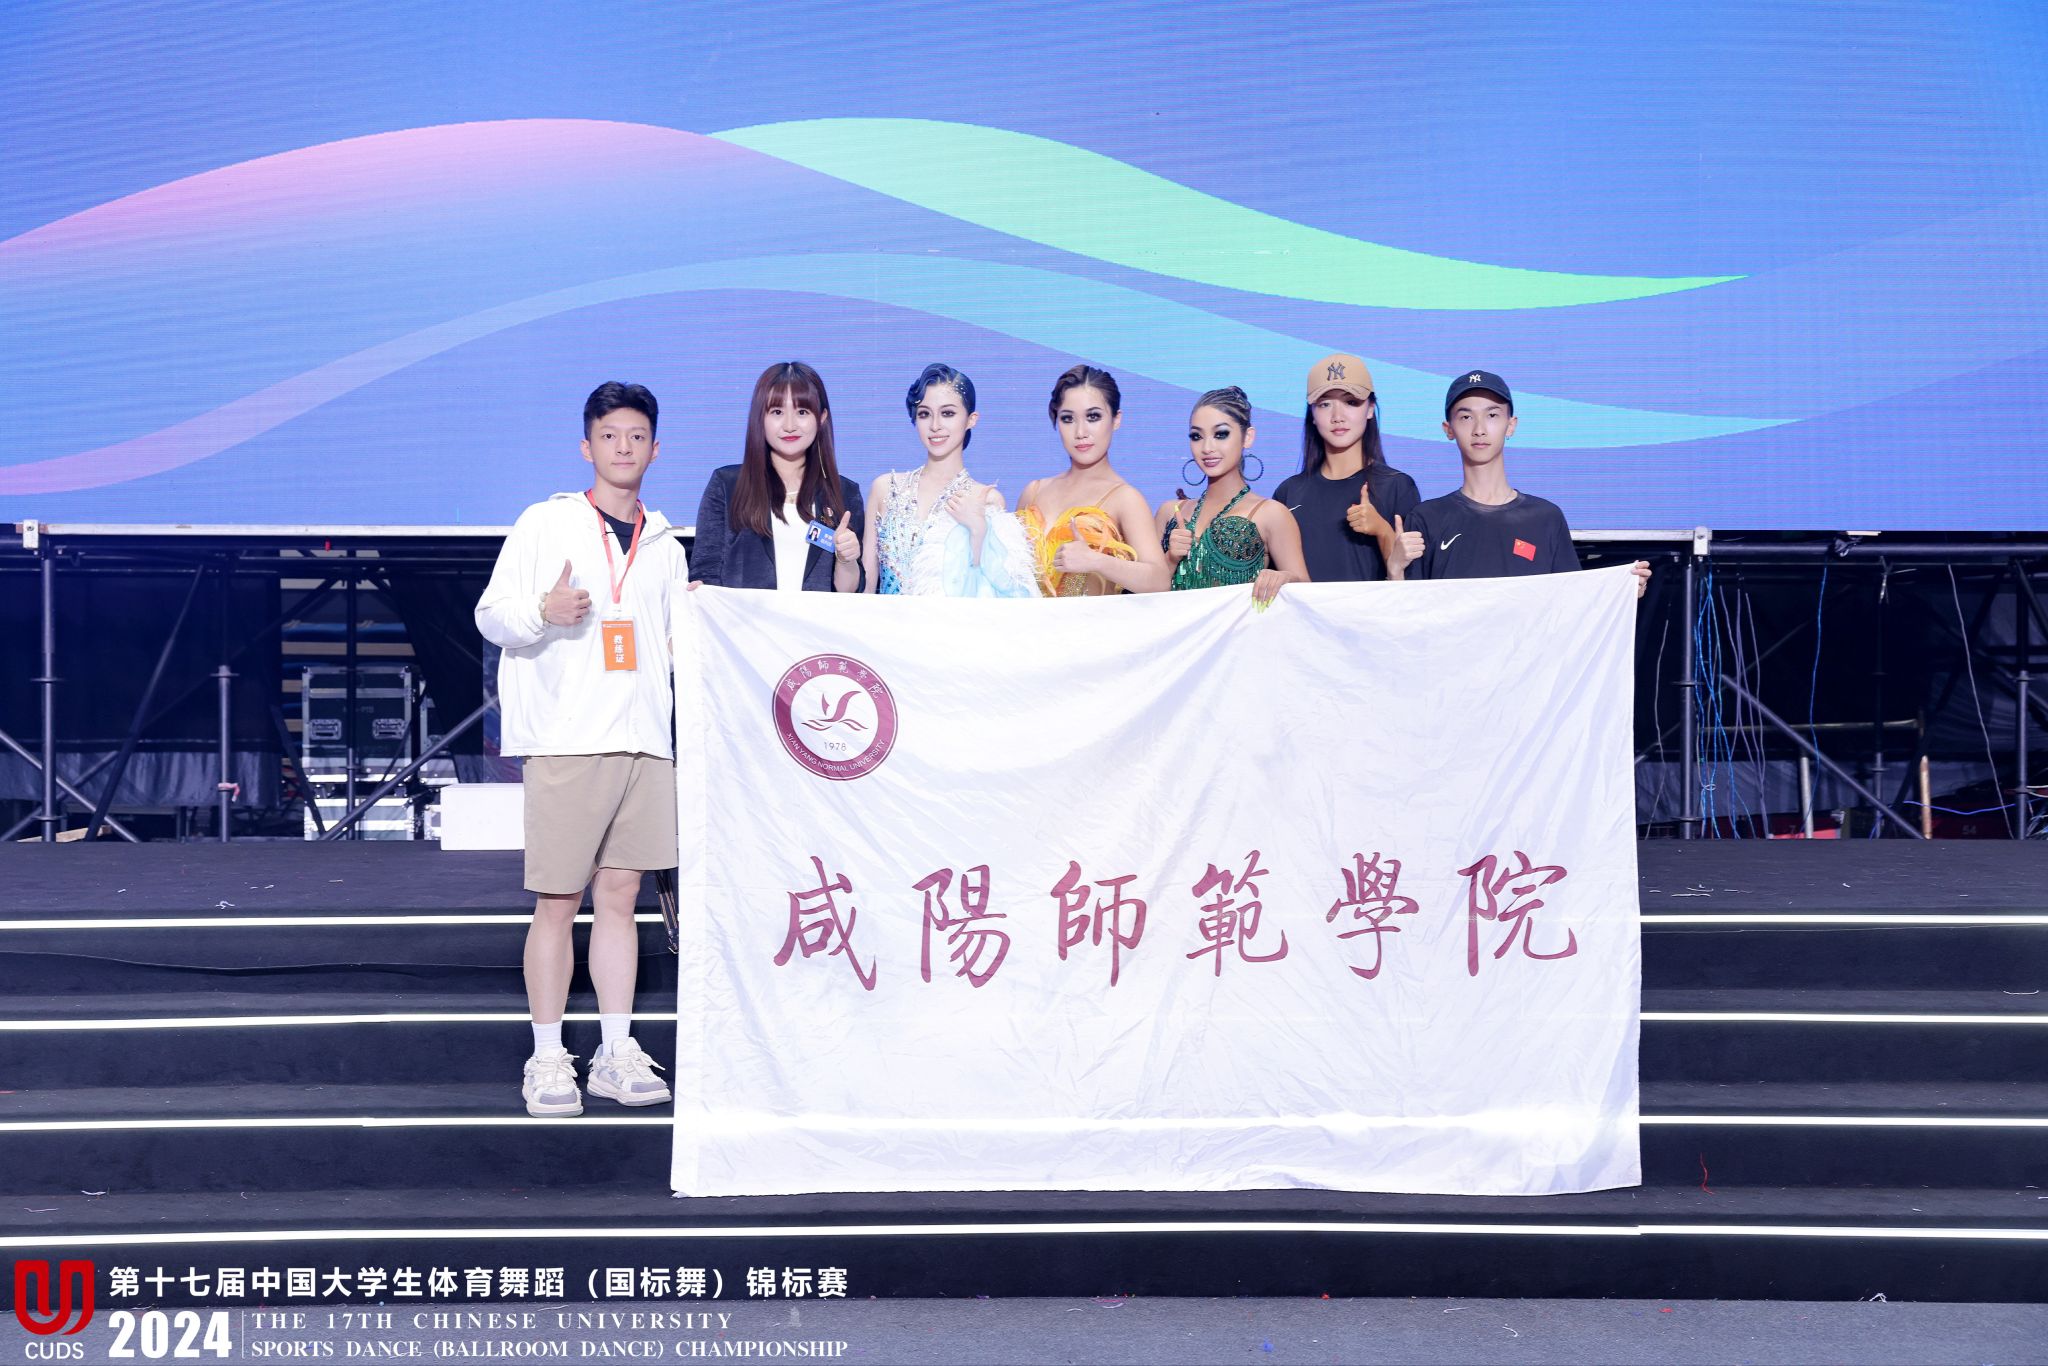 年第17届中国大学生体育舞蹈锦标赛中喜获佳绩